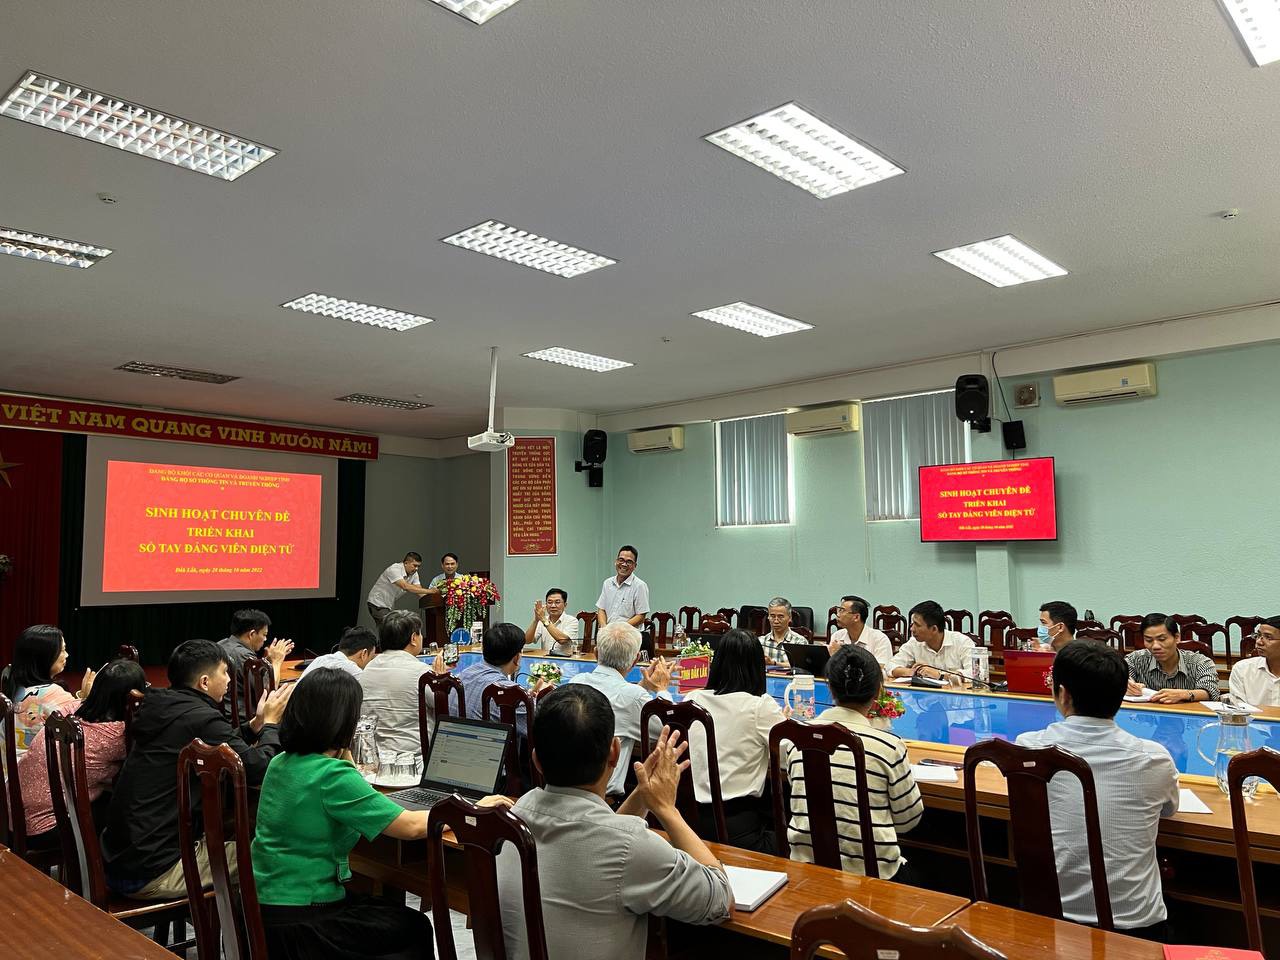 VNPT Đắk Lắk cài đặt sổ tay đảng viên điện tử tại Sở Thông tin và Truyền thông